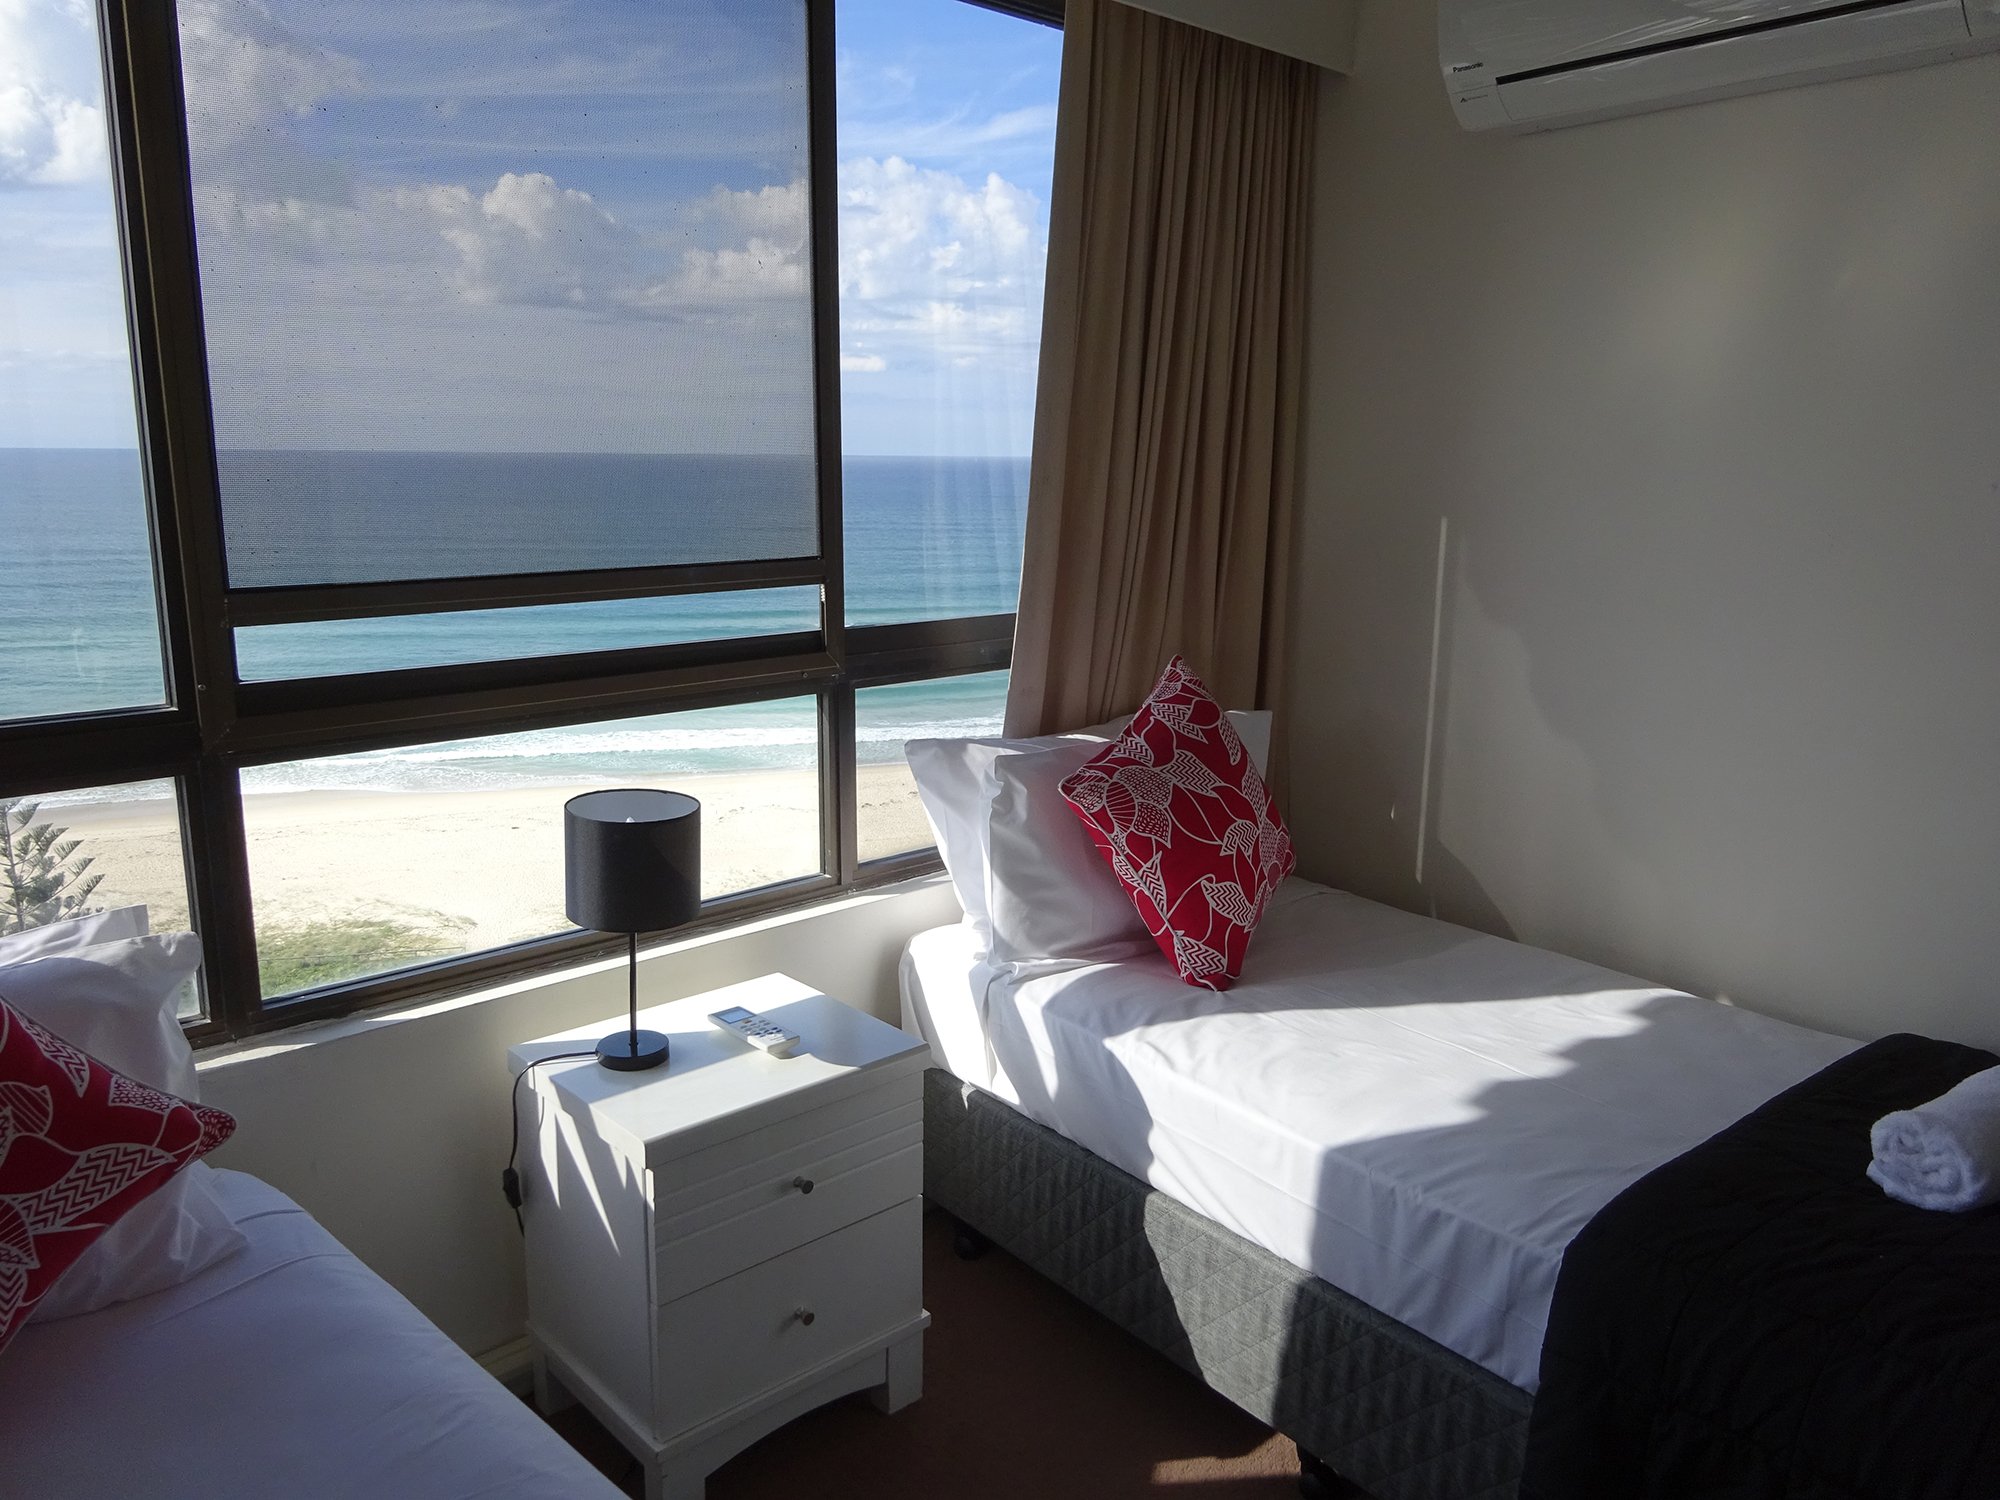 Southern Gold Coast accommodation